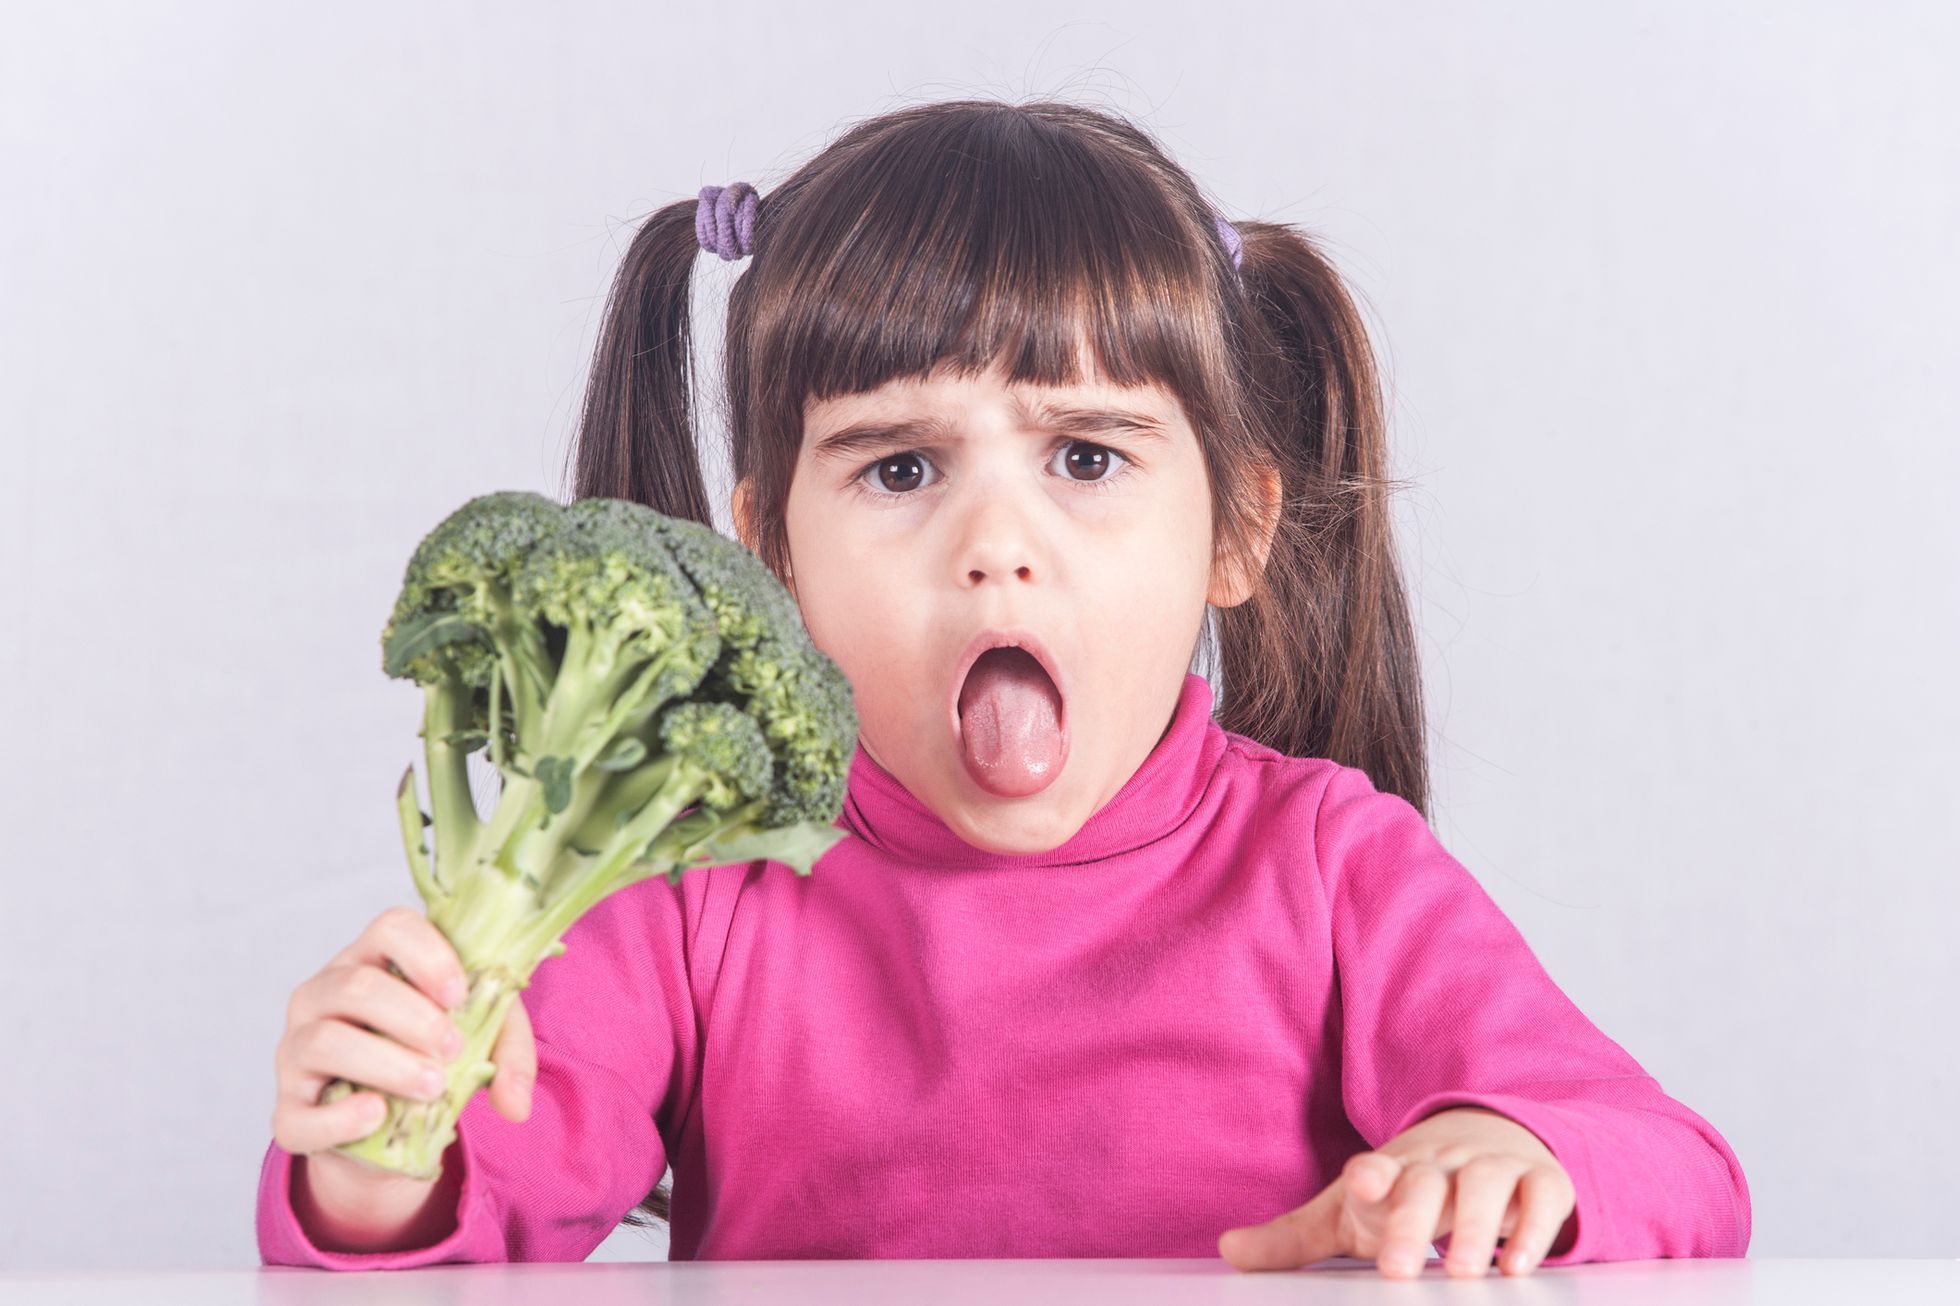 Brokolice - dítě - nechuť - ble - zdravá strava